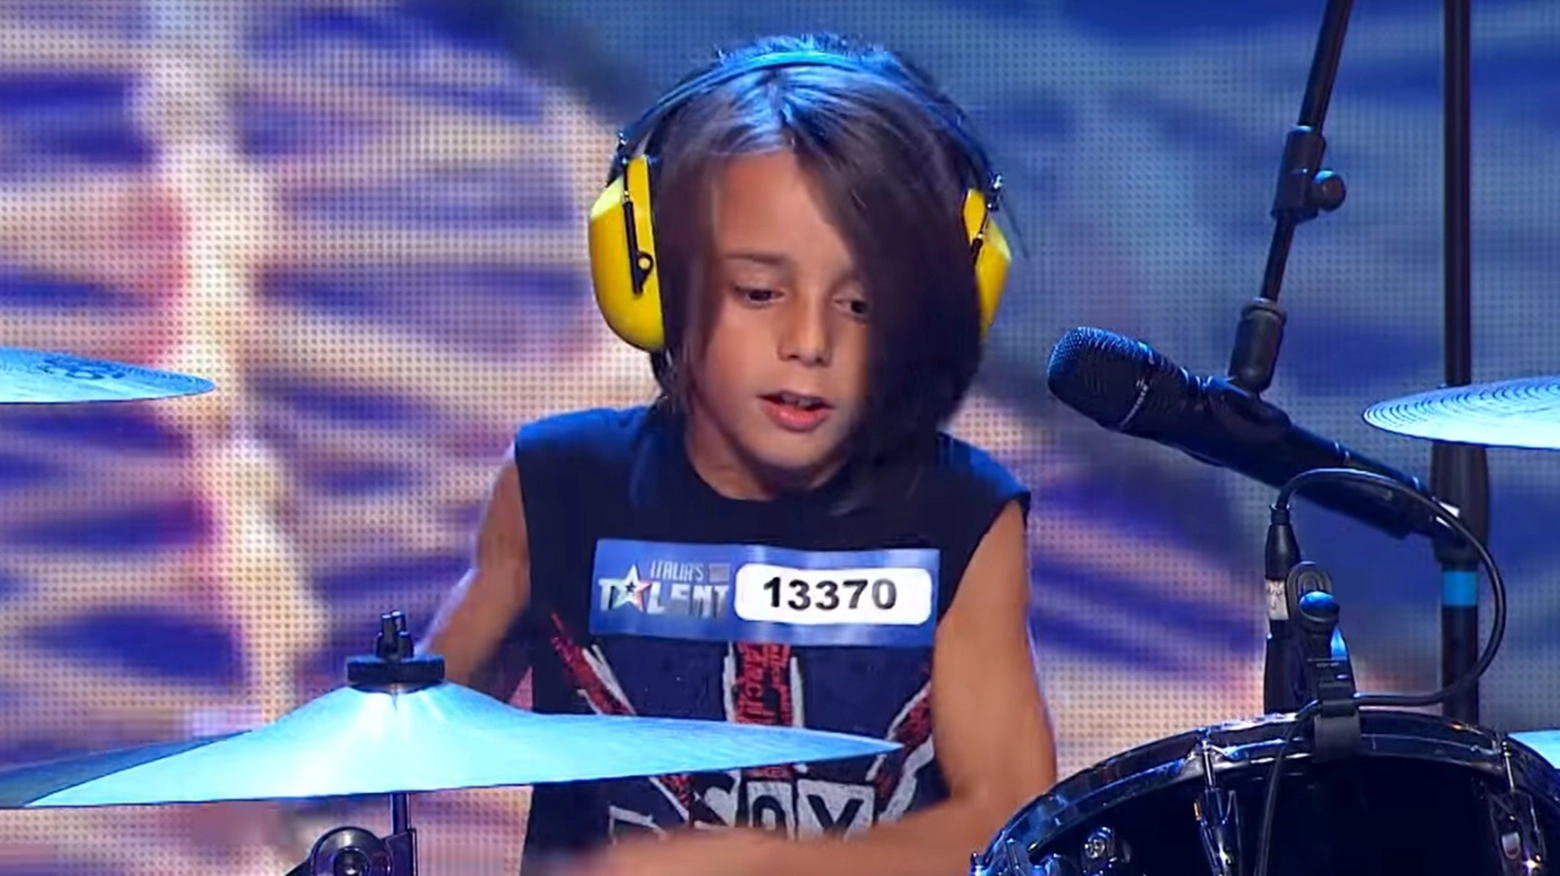 Il piccolo Edoardo è in finale nel programma Italia's Got Talent in onda sul canale TV